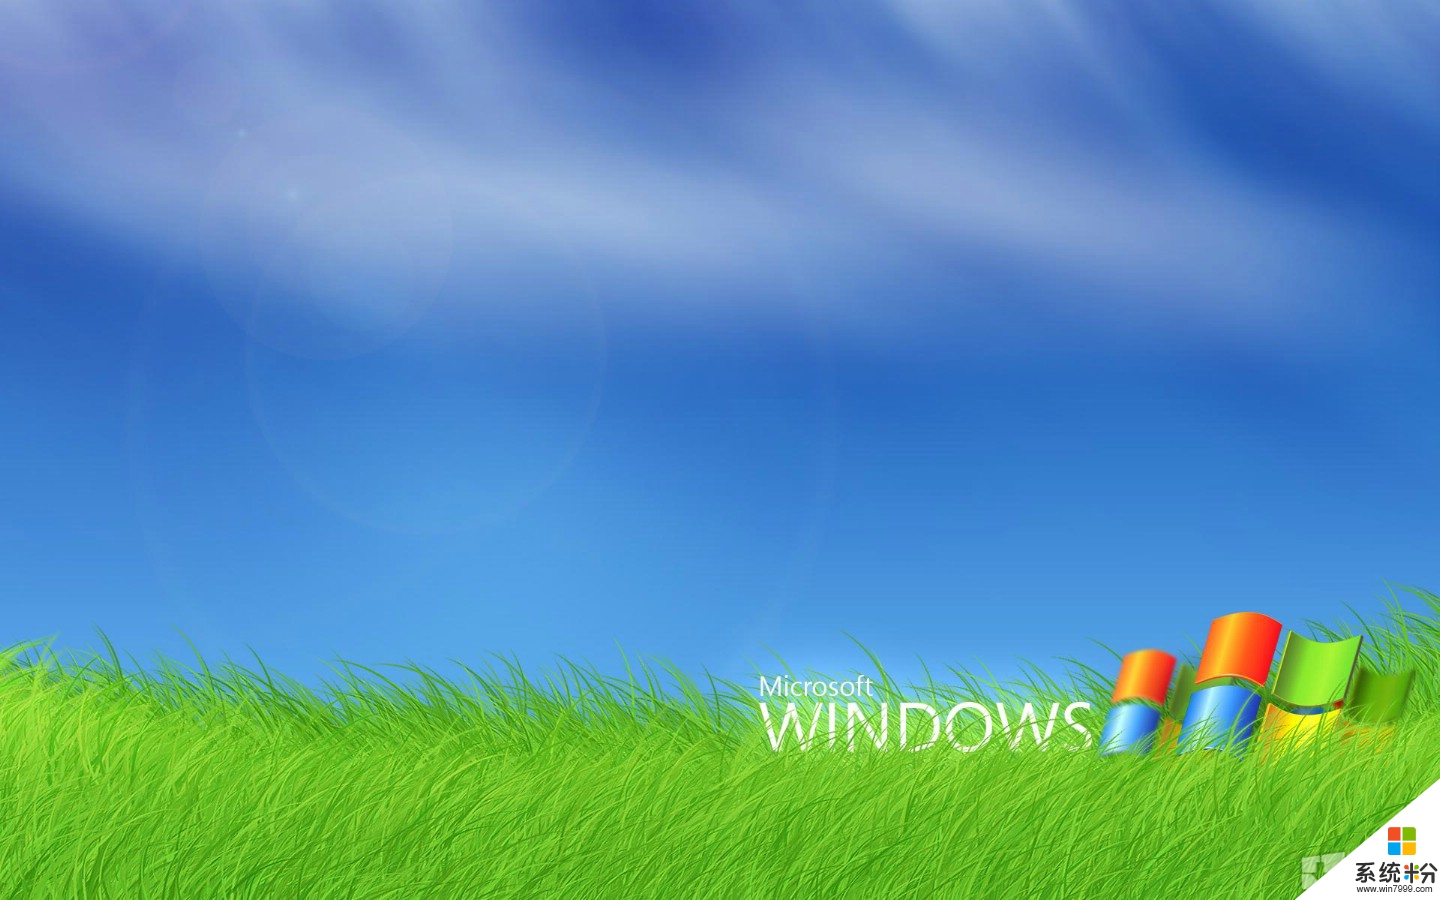 XP升级Windows 7数据转移的相关问题